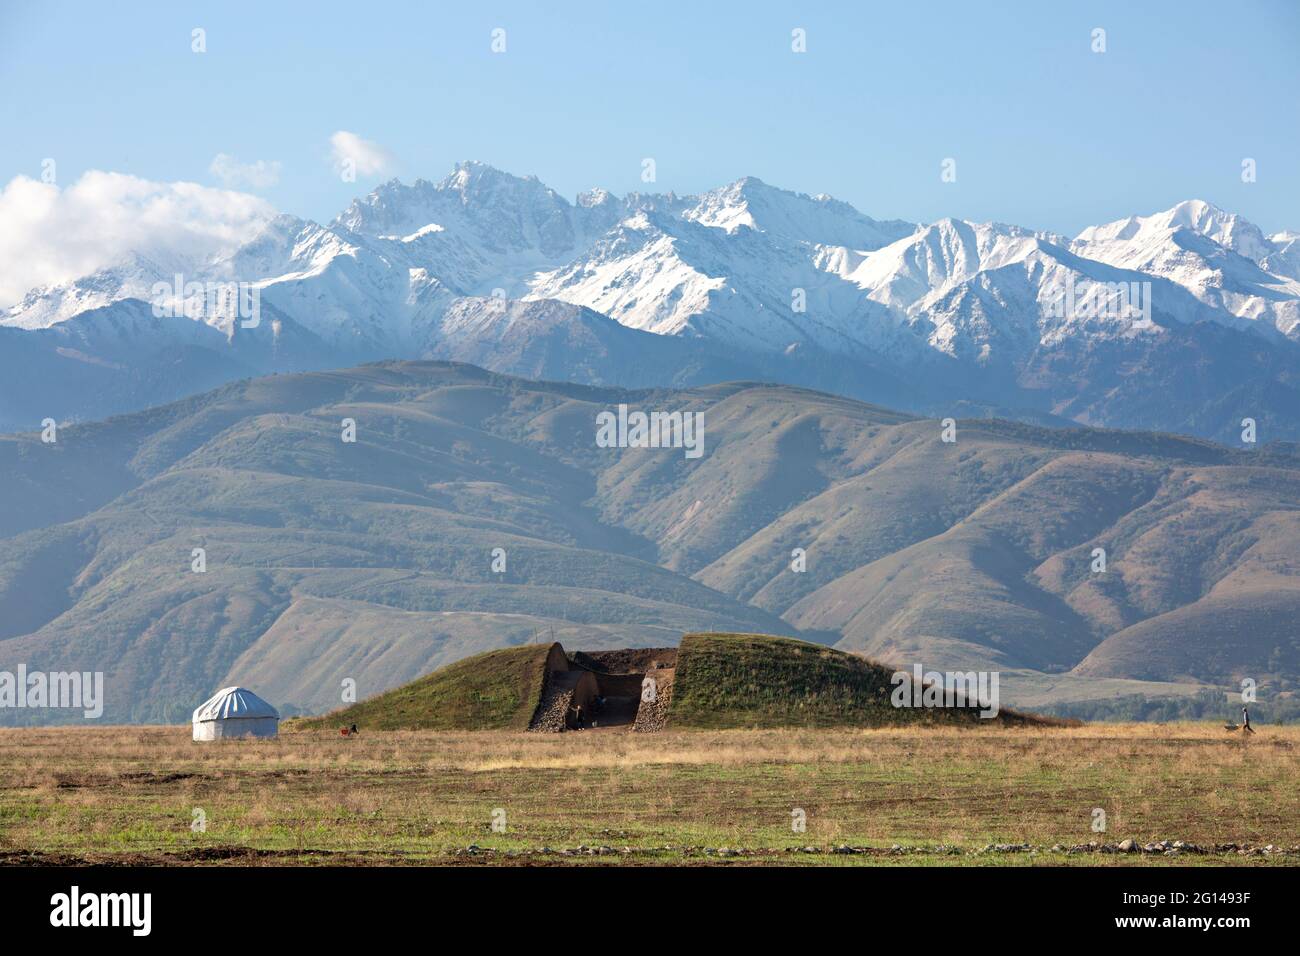 Fouilles archéologiques dans une fosse funéraire près de la ville d'Almaty et d'une yourte nomade, Almaty, Kazakhstan Banque D'Images